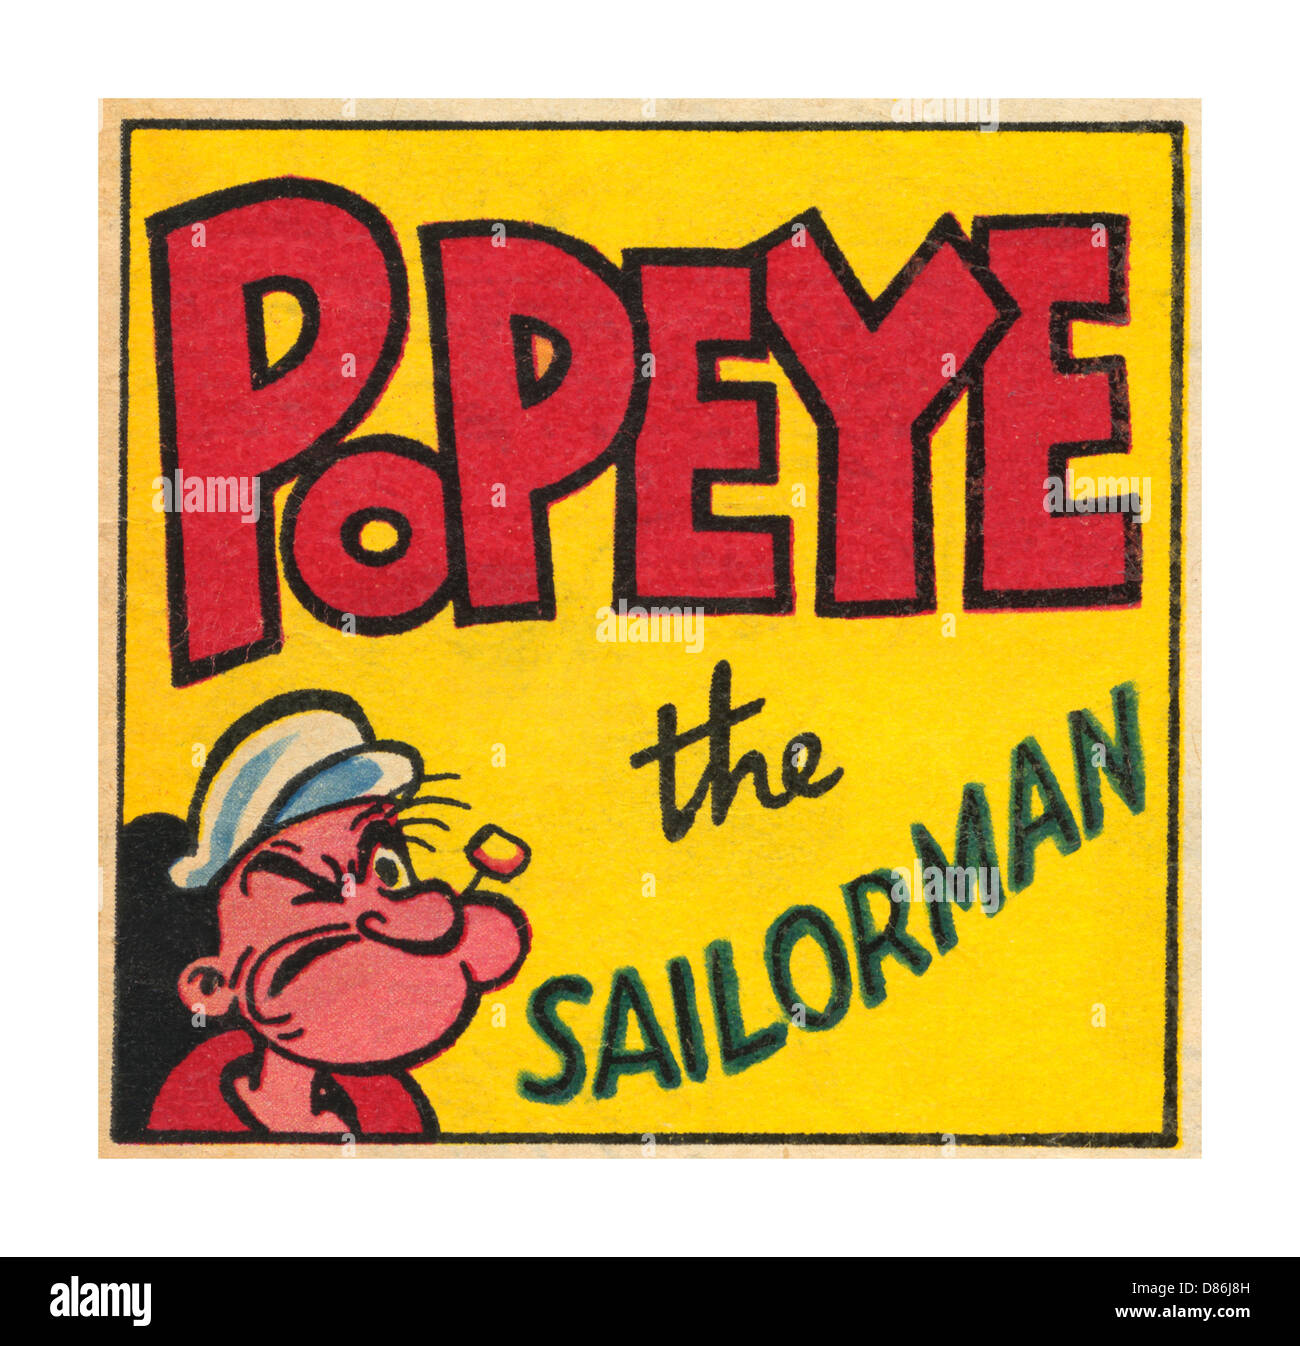 Popeye le marin l'homme est un héros de bande dessinée personnage de dessin animé qui est apparu dans les bandes dessinées et dessins animés Banque D'Images